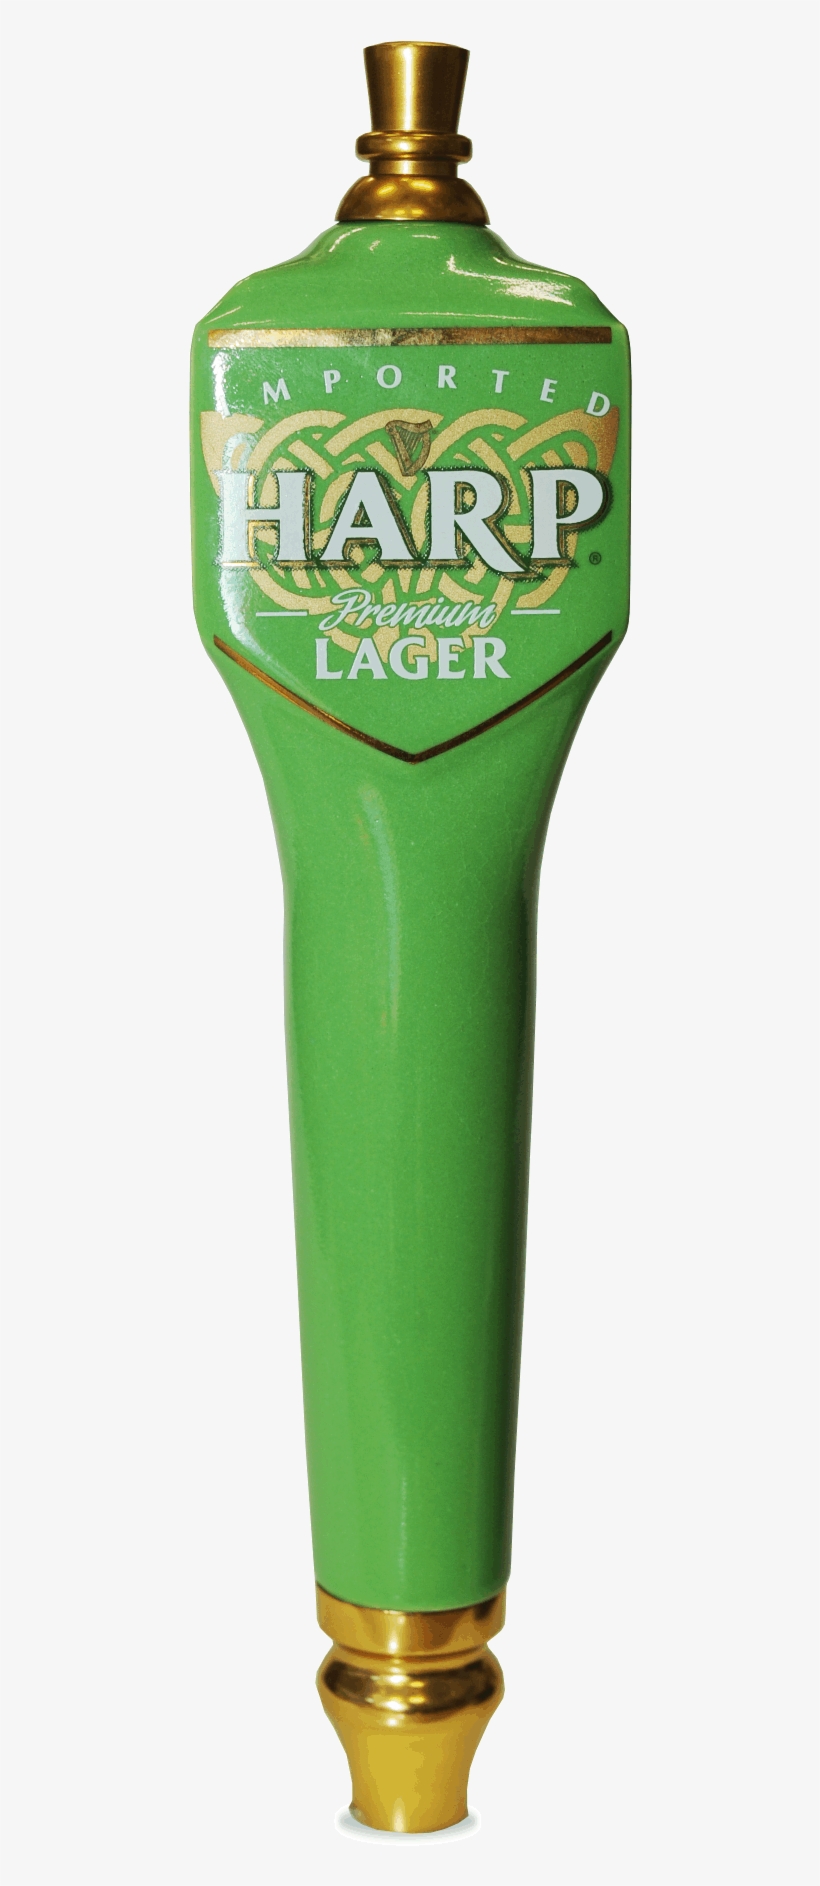 Harp Harp Has A Beverage Tapper - Beer Bottle, transparent png #8805934